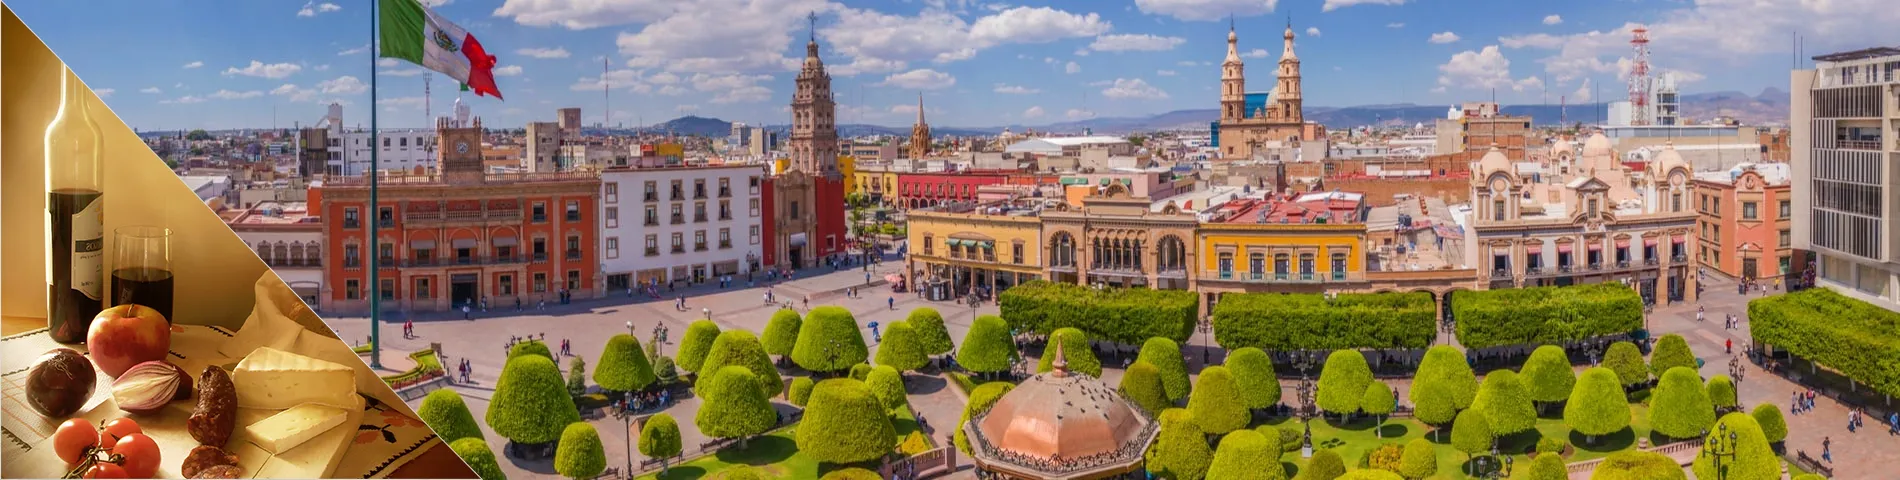 Guanajuato - Spagnolo & Cultura